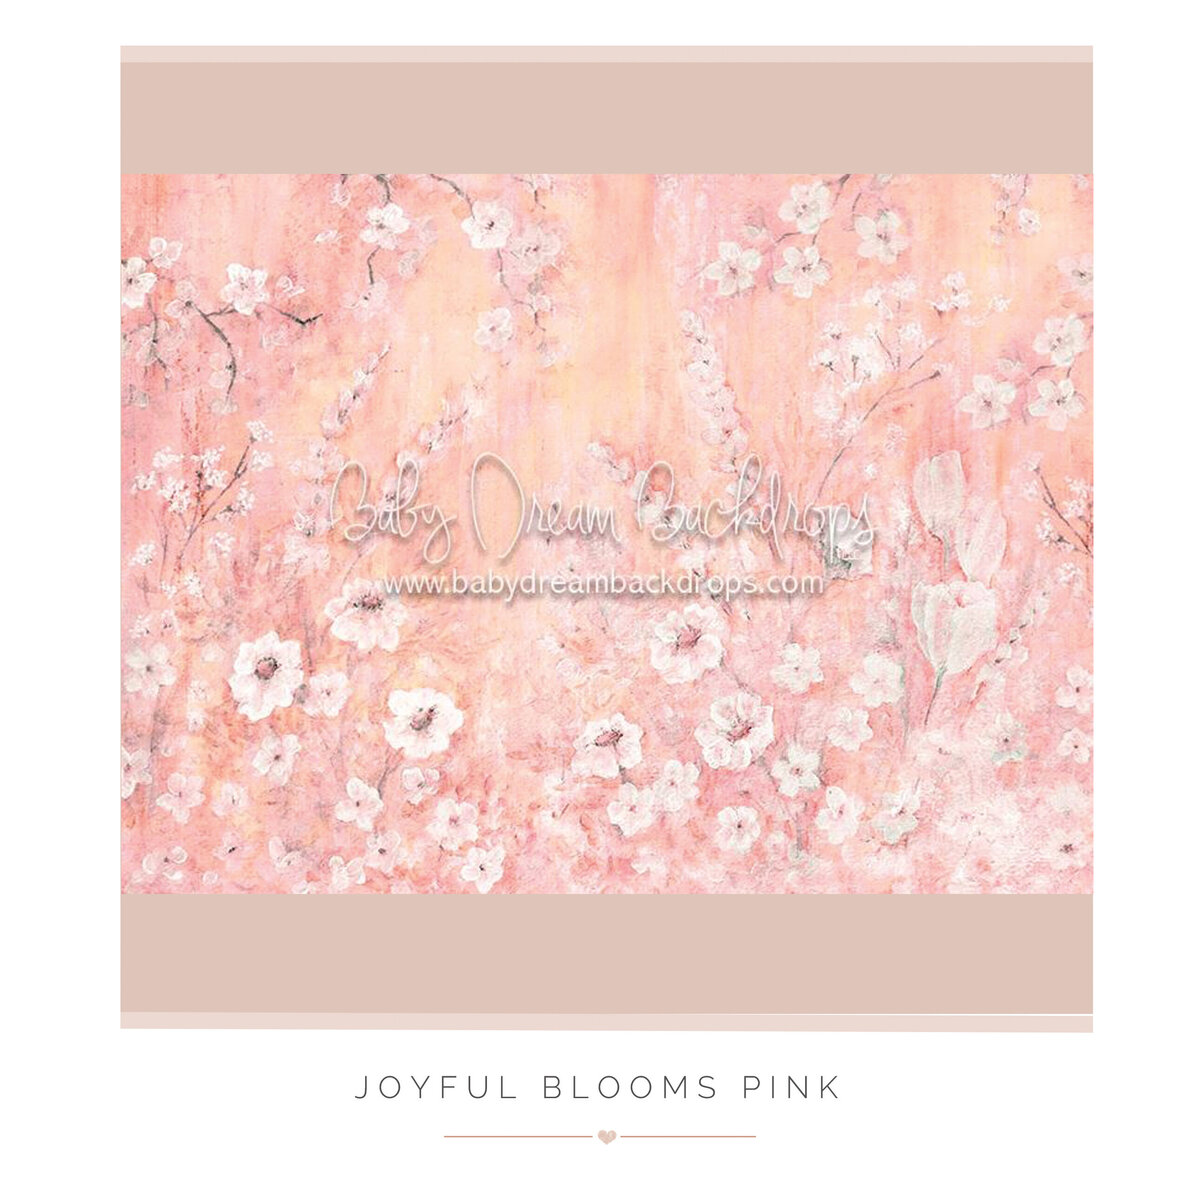 Joyful Blooms Pink